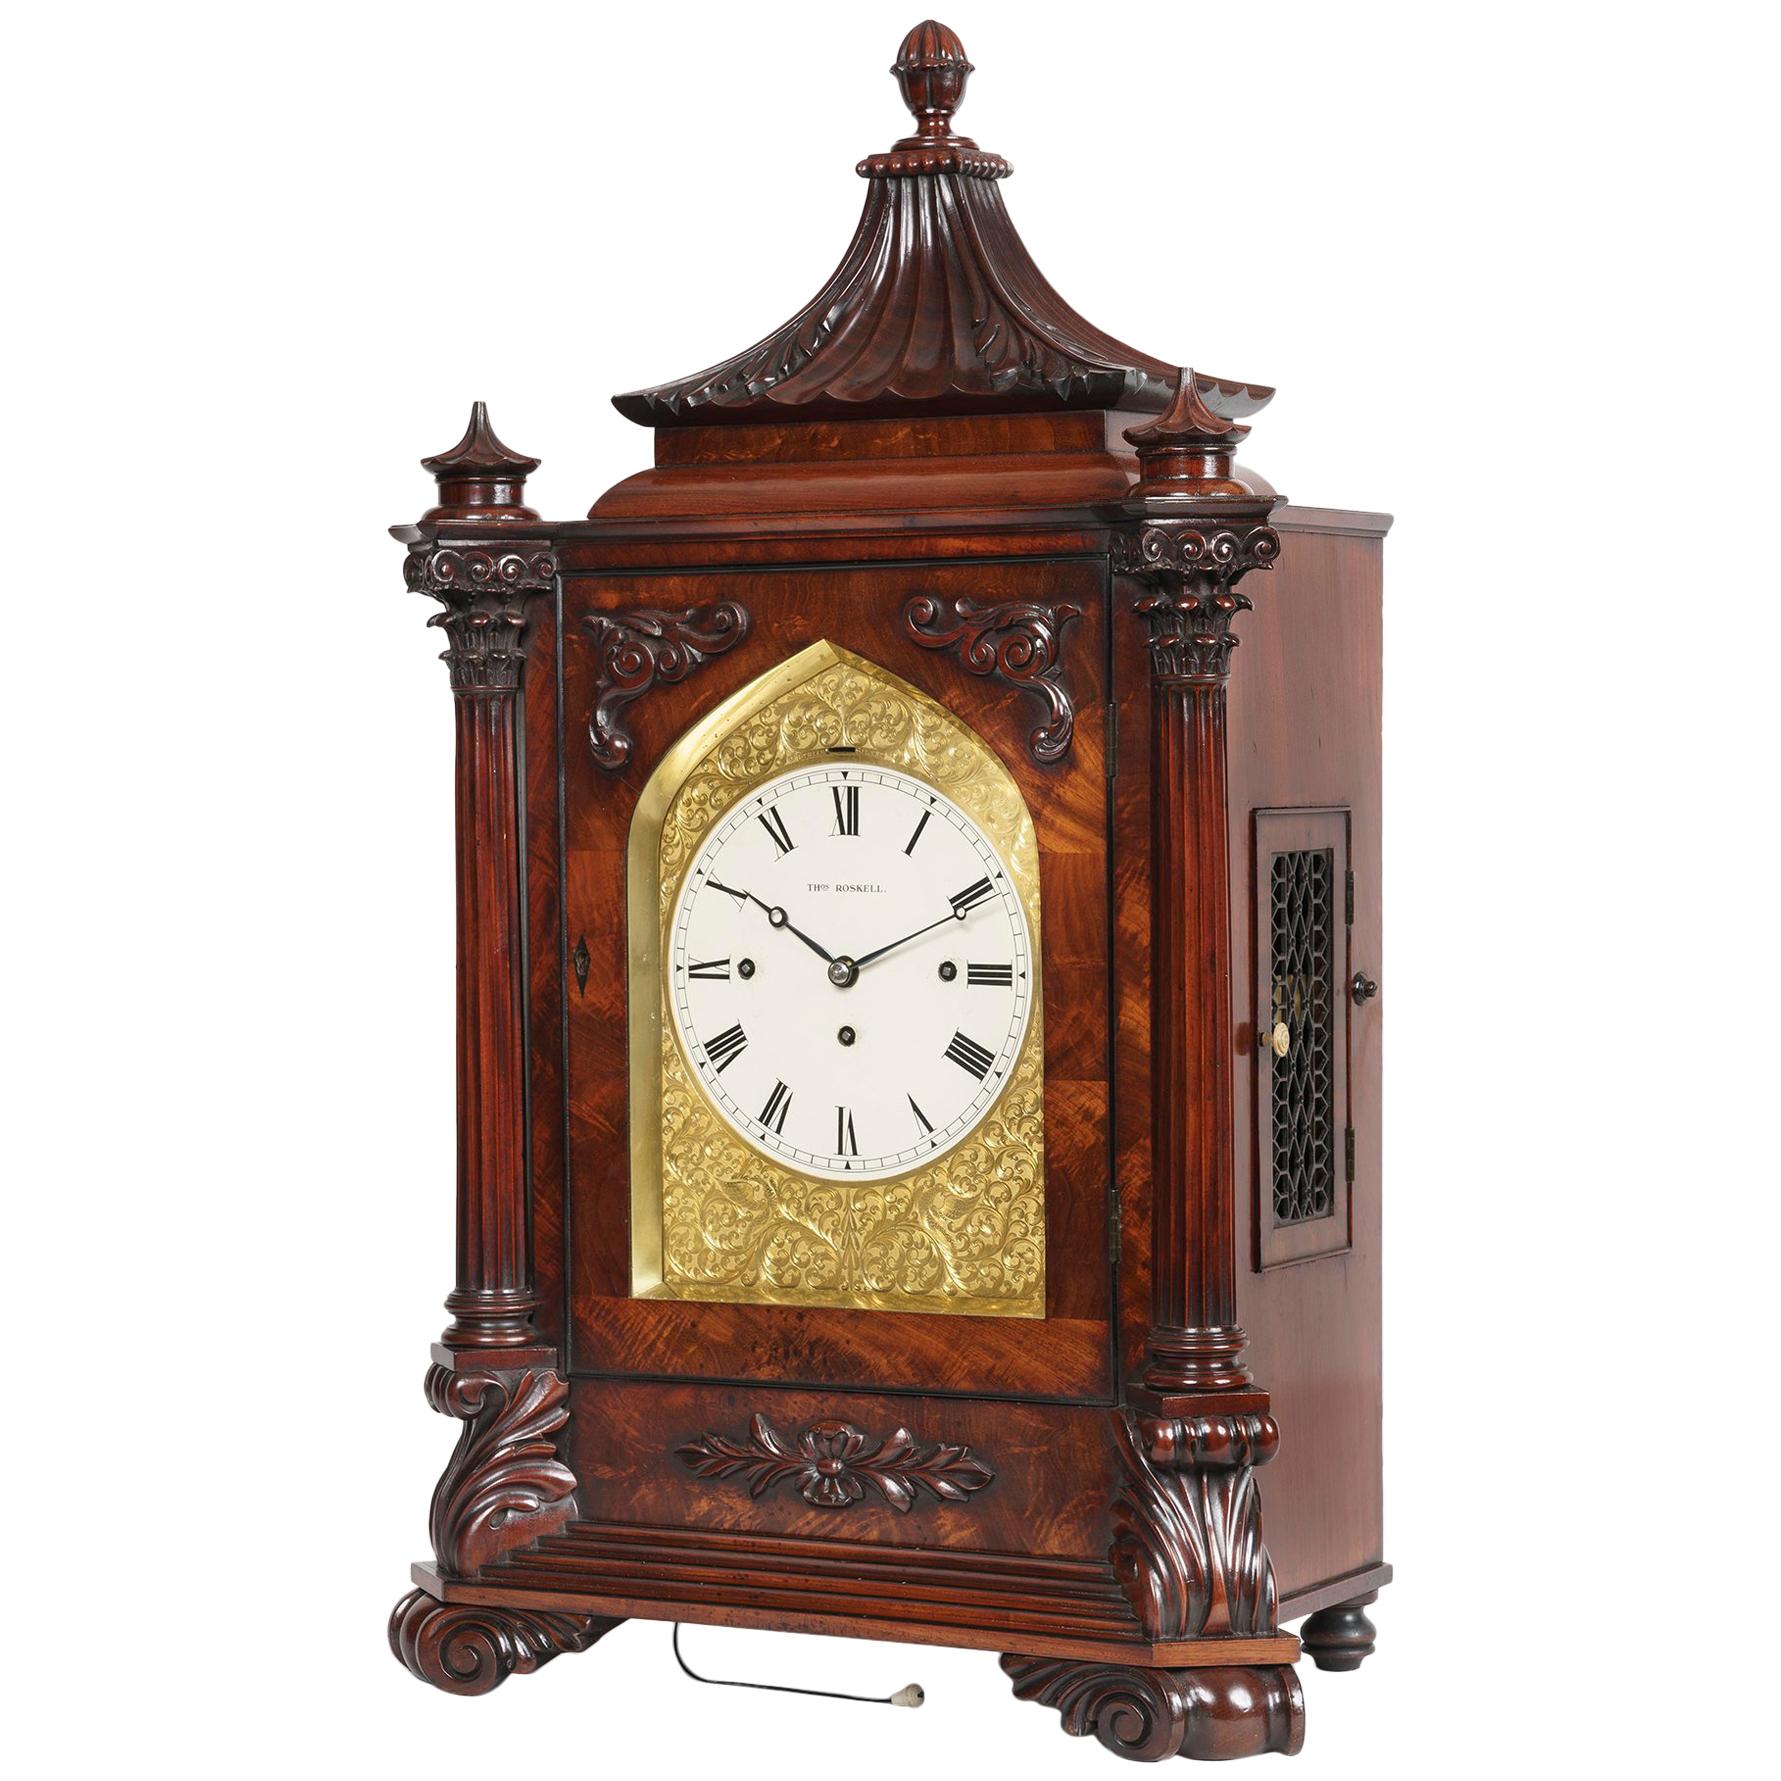 Late Georgian Mahogany Musical Table Clock